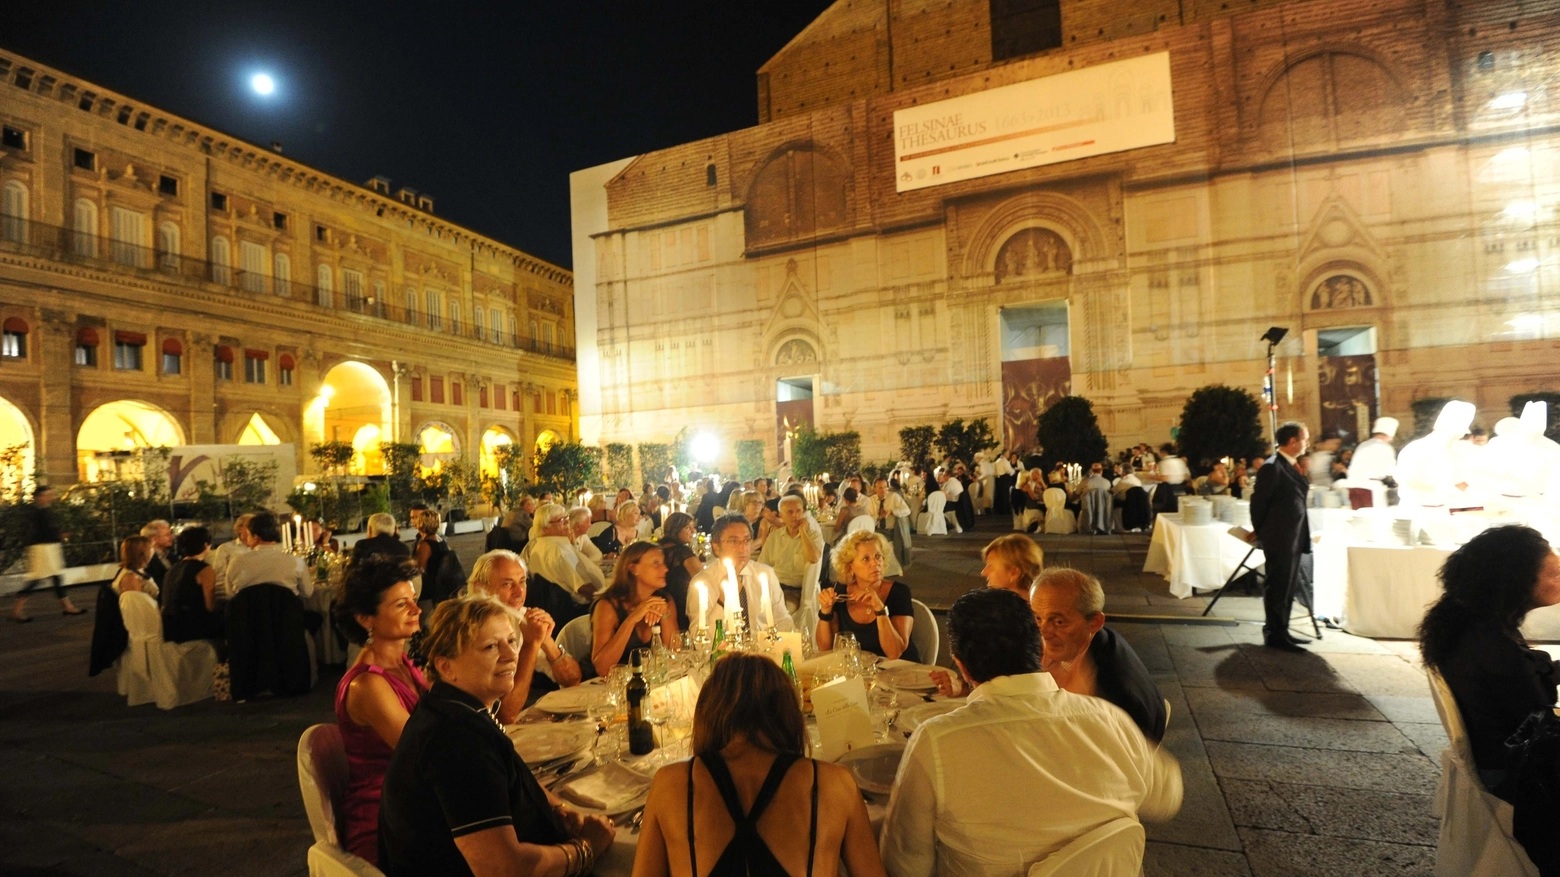 La cena per la Fanep organizzata in piazza Maggiore 9 anni fa (Schicchi)